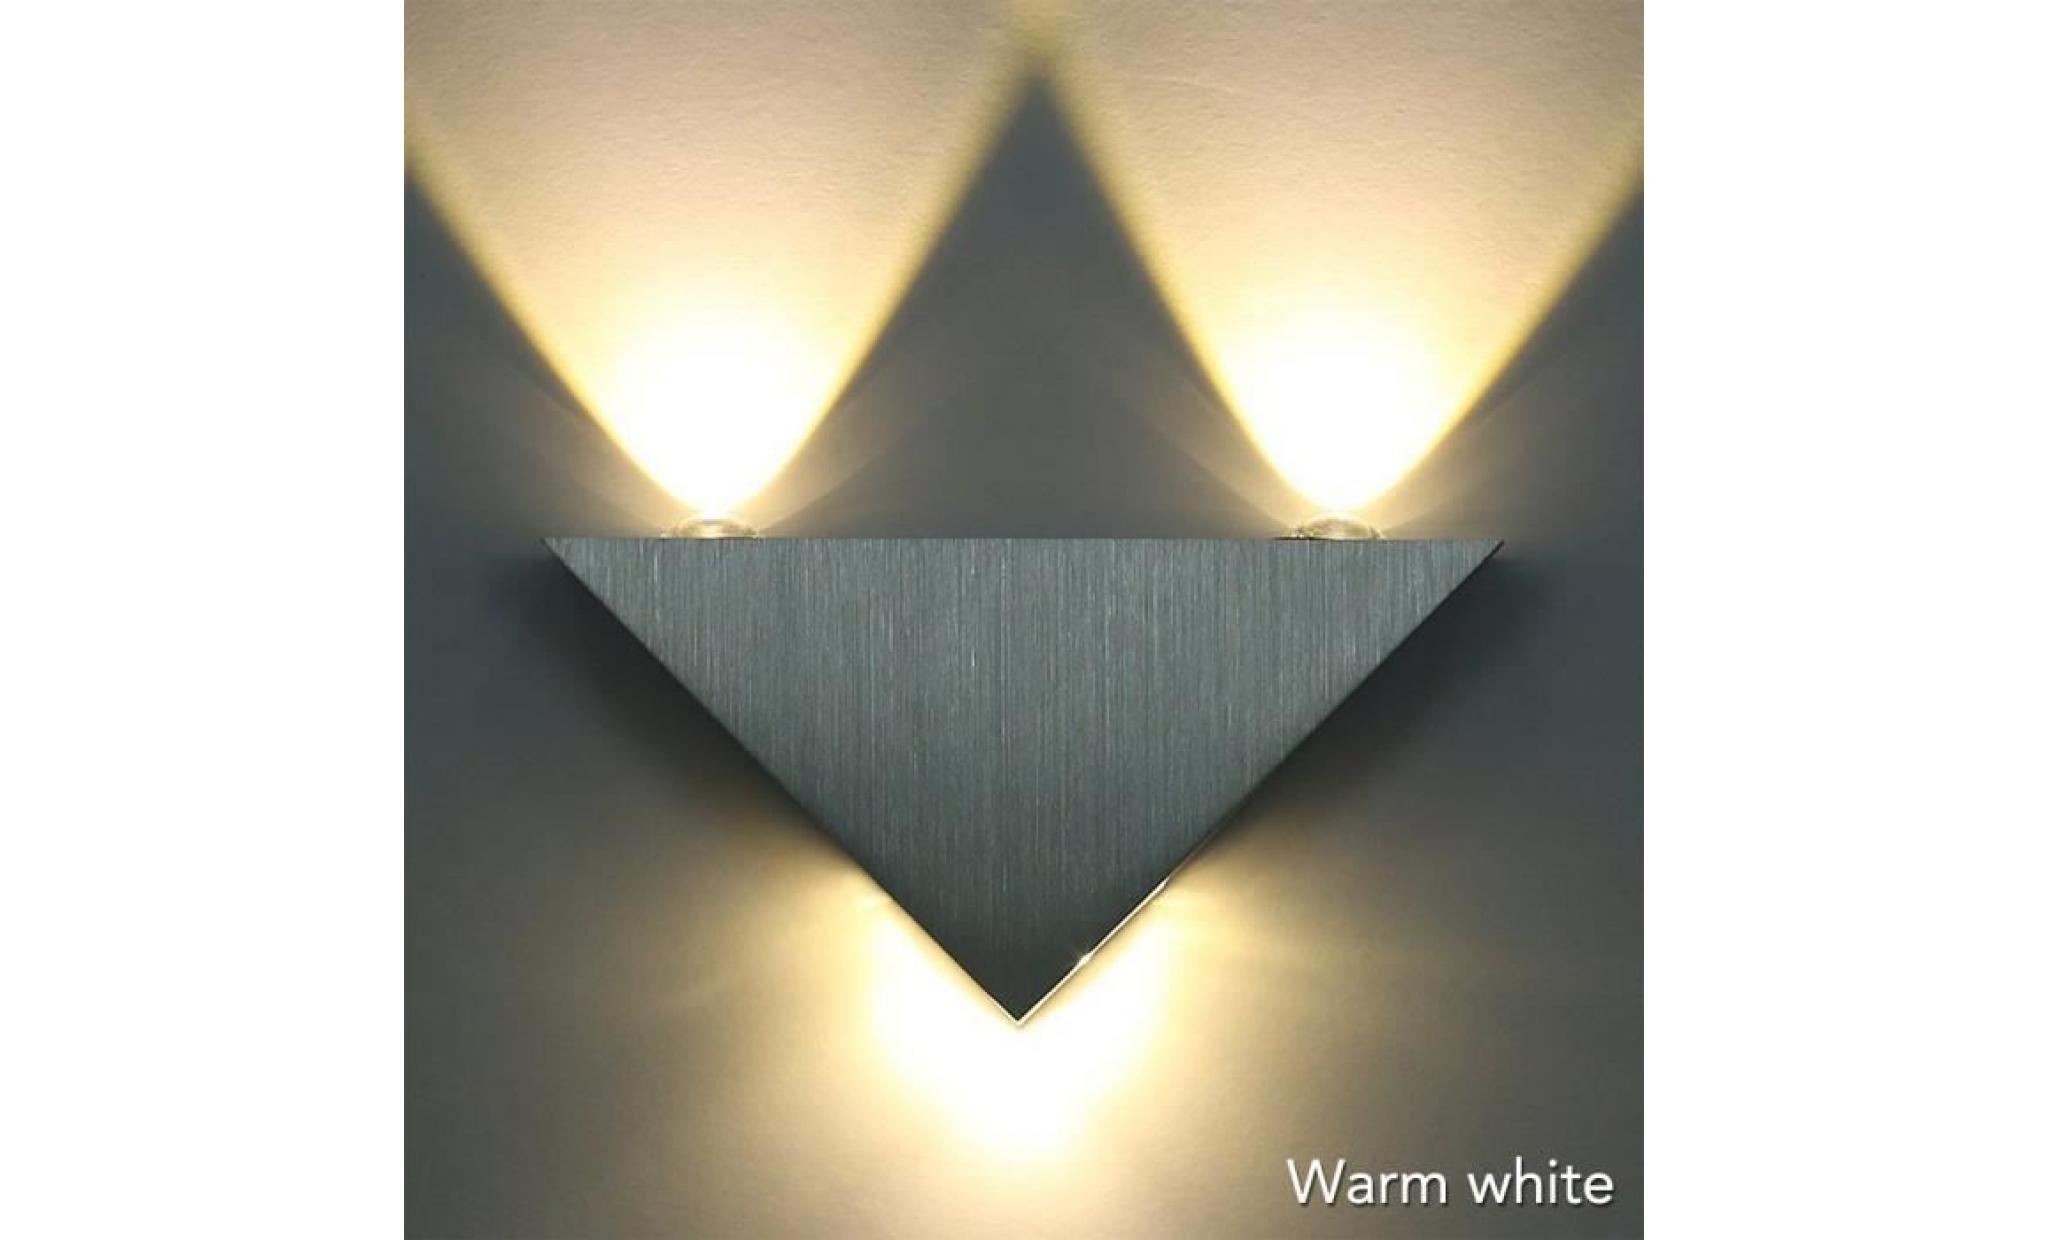 applique de triangle, applique murale led blanc chaud lampe hall couloir ktv, lumières décoratives led [classe énergétique a+]